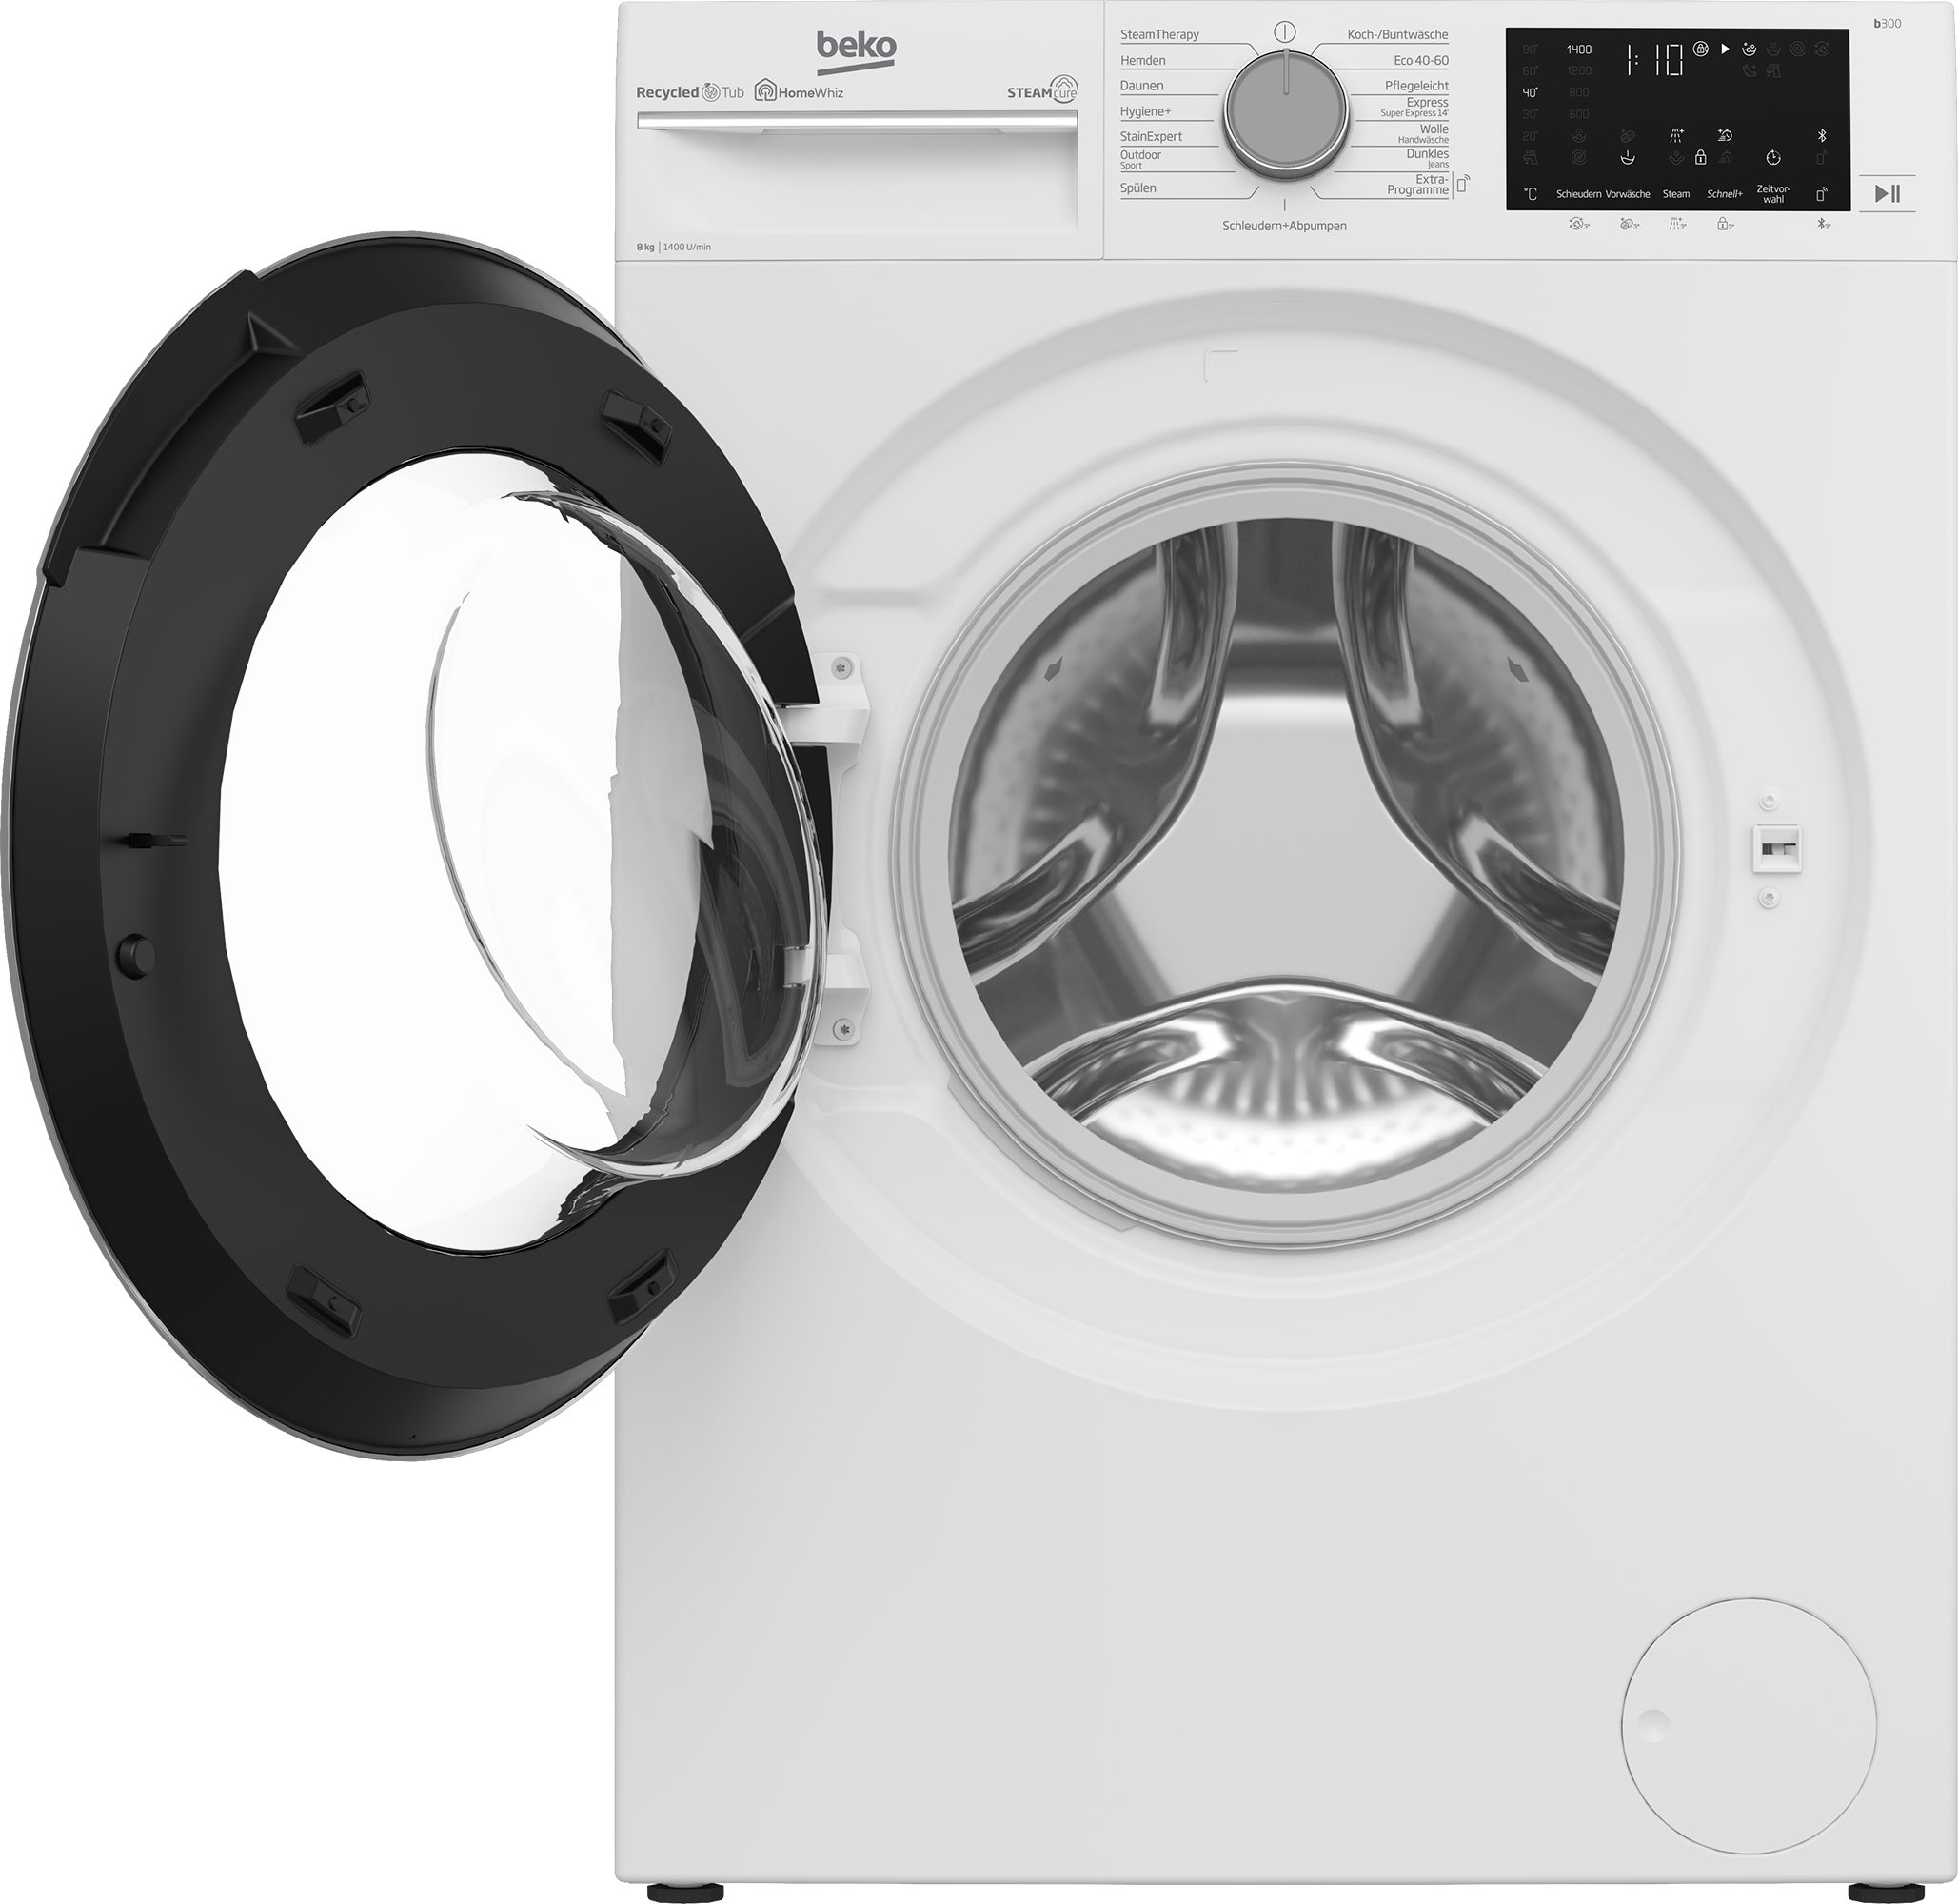 8 Waschmaschine b300 - allergenfrei 99% SteamCure U/min, kg, B3WFU58415W1, BEKO 1400